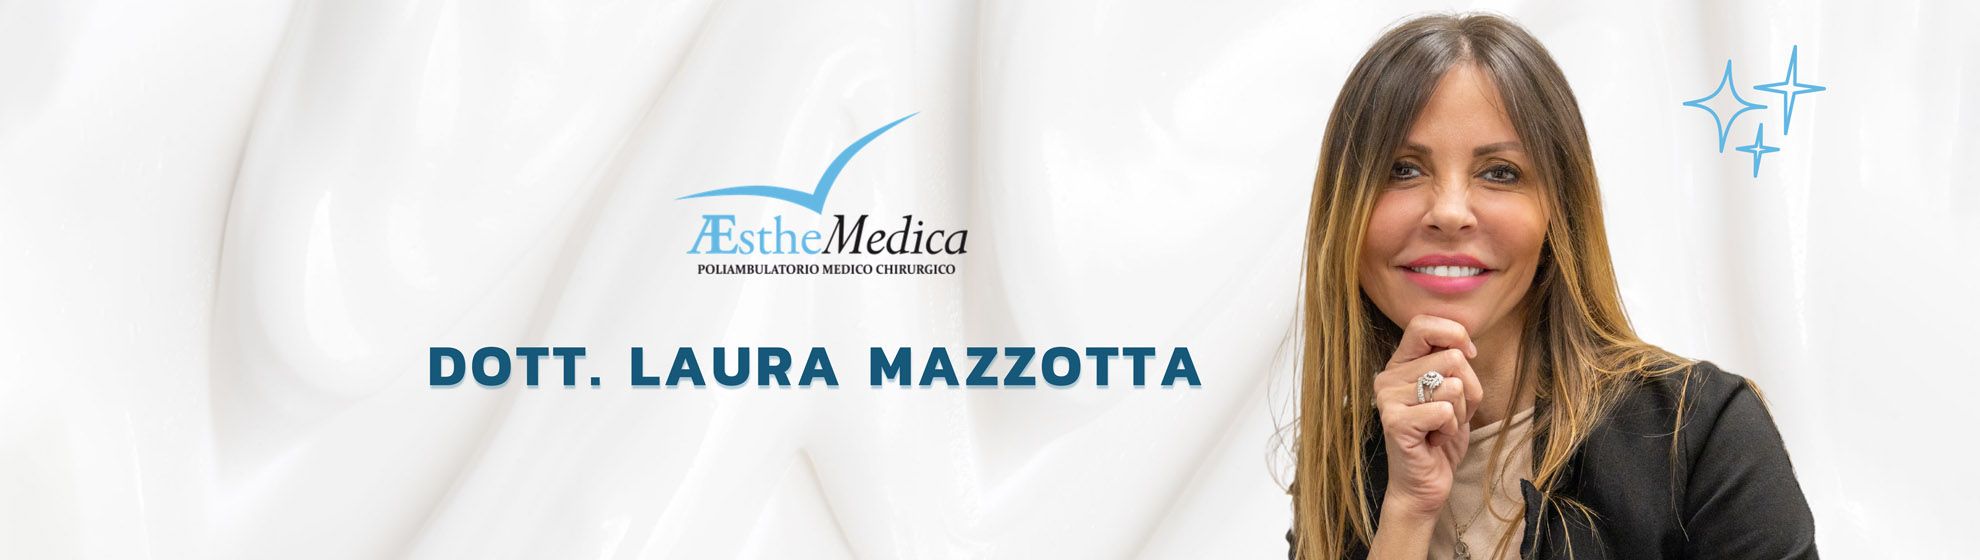 Dott.ssa Laura Mazzotta